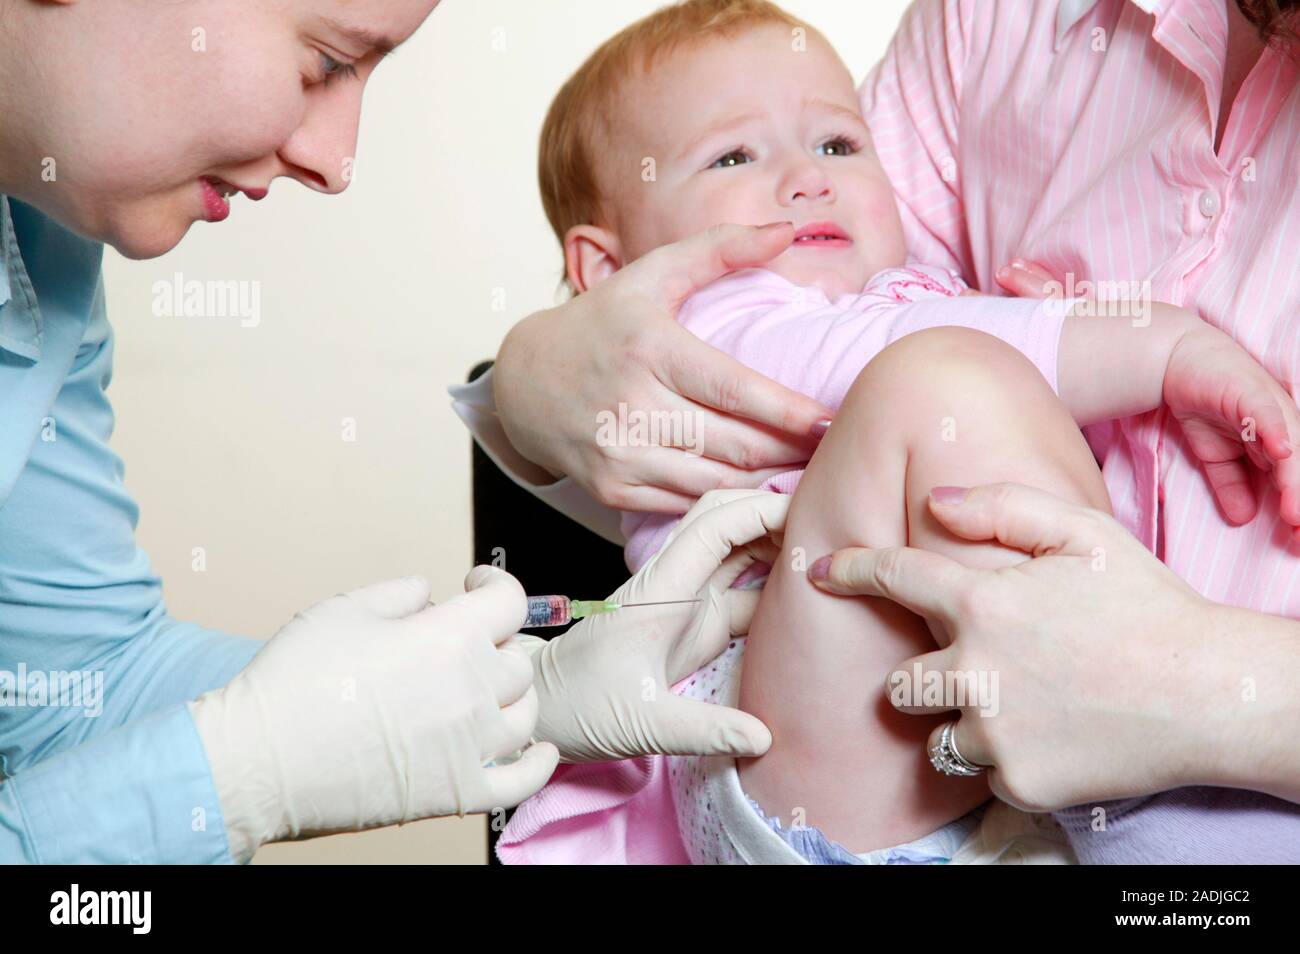 Поставить прививку ребенку екатеринбург